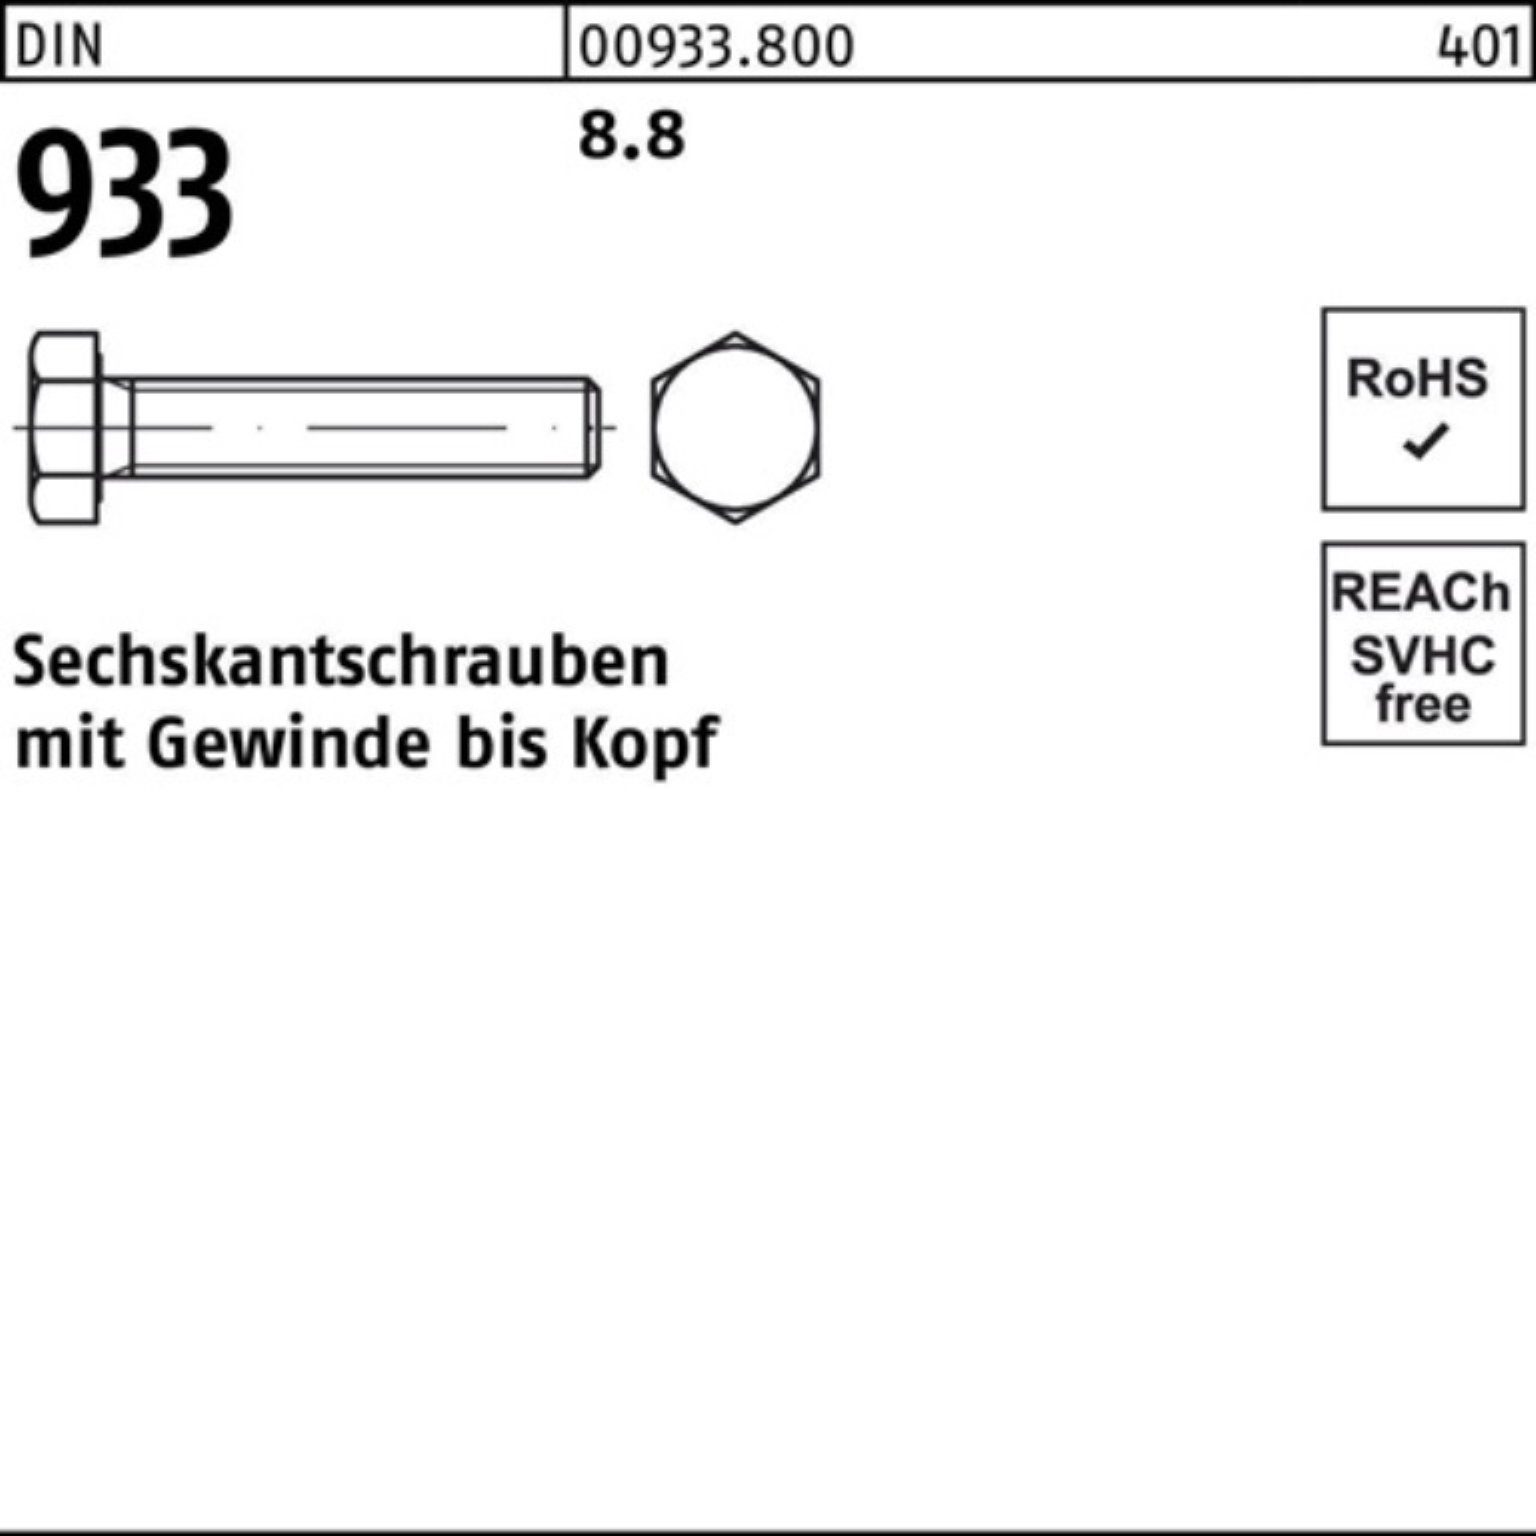 360 DIN Reyher Stück 100er DIN Pack Sechskantschraube VG 1 M30x Sechskantschraube 8.8 933 933